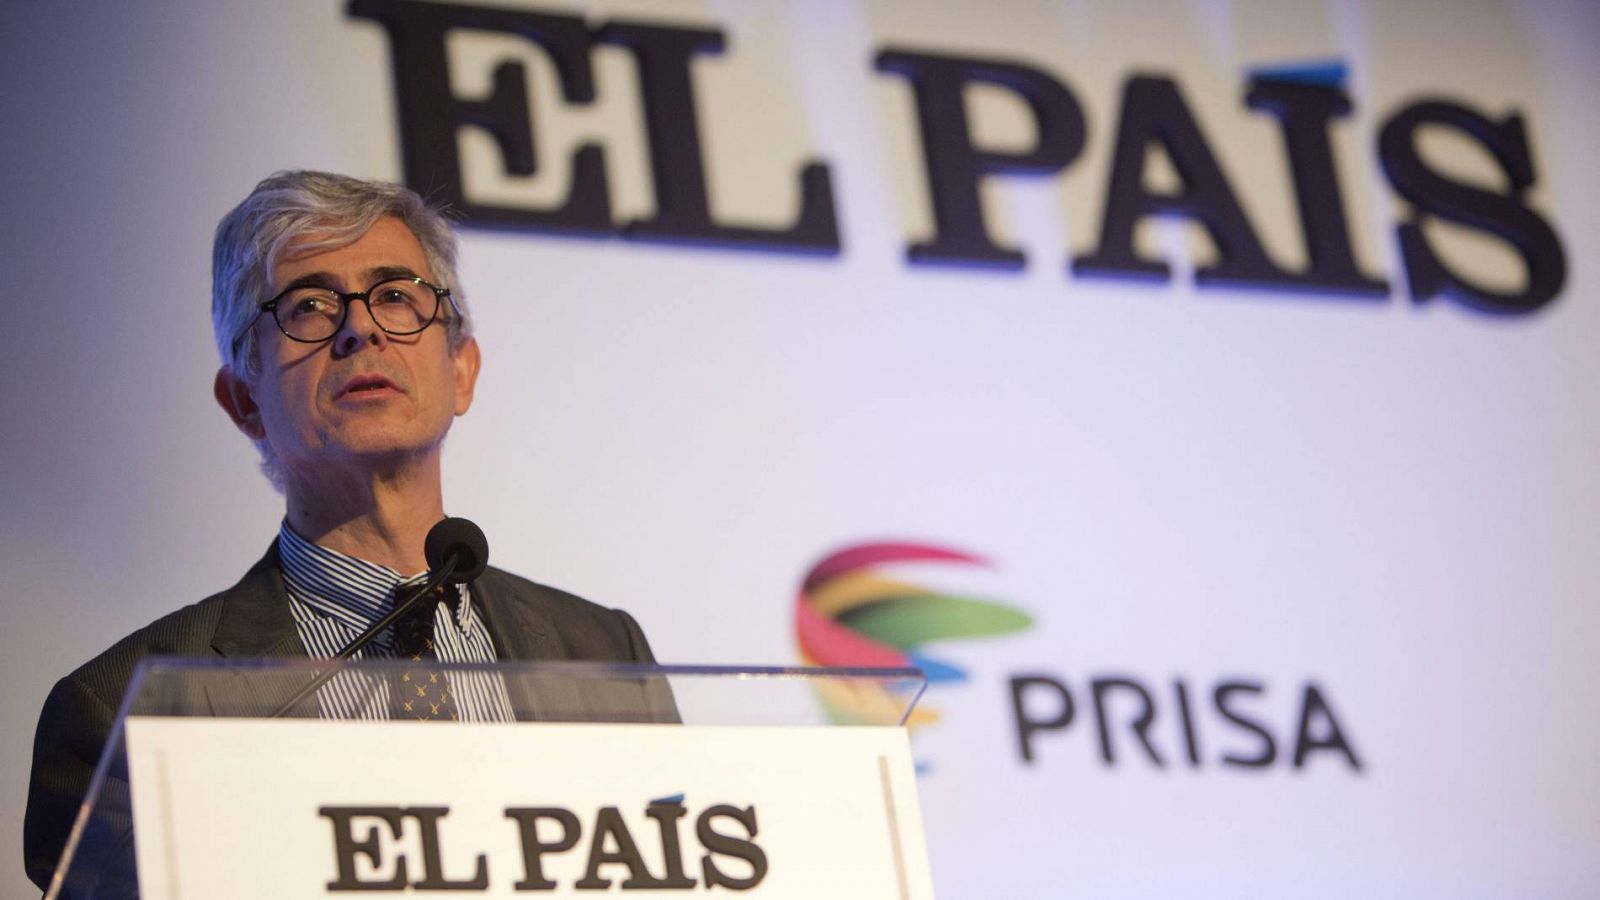 El nuevo director de El País, Javier Moreno, en una imagen de archivo